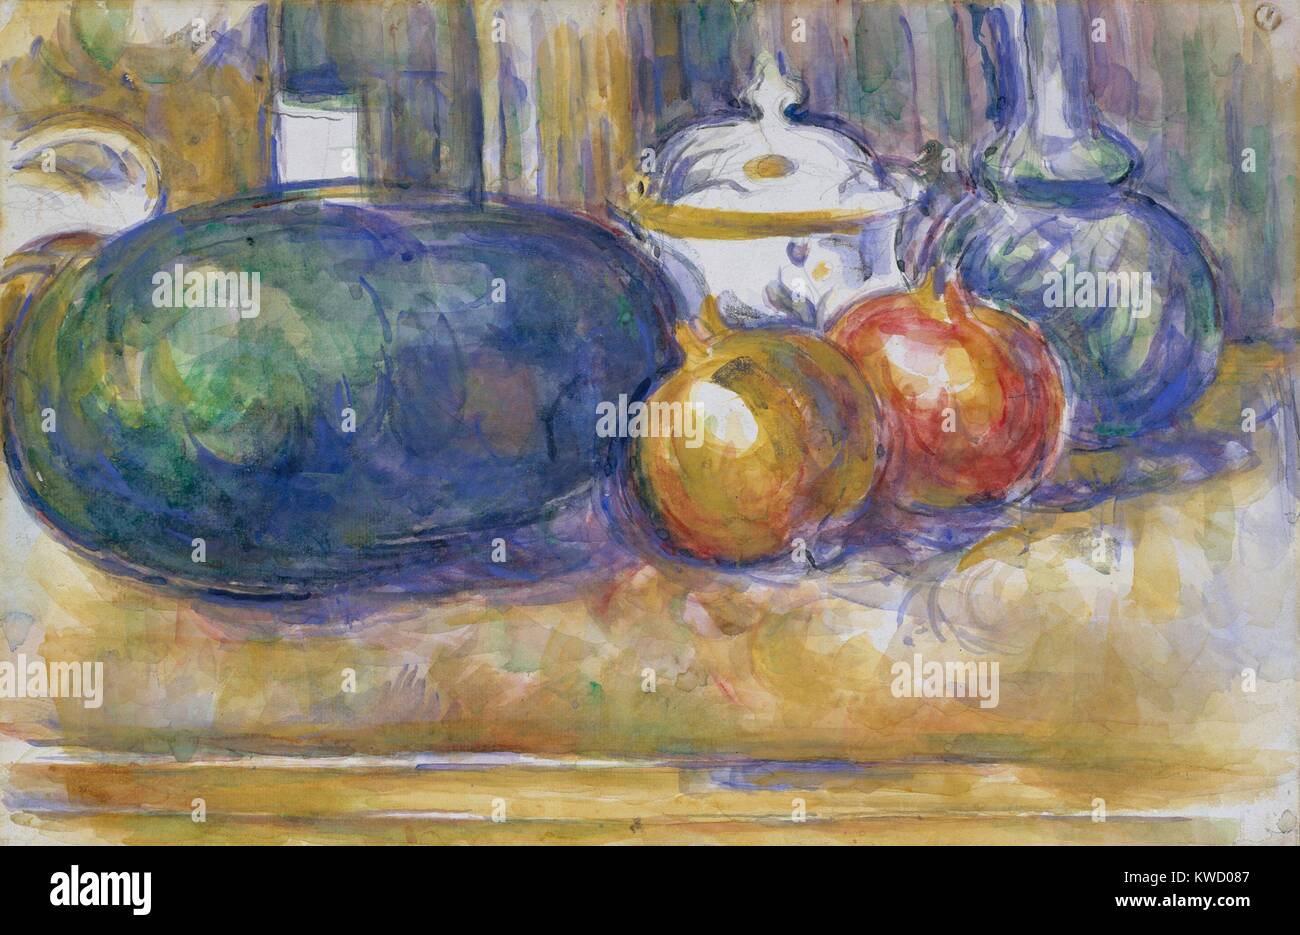 Still-Life mit einer Wassermelone und Granatäpfel, von Paul Cezanne, 1900-06, französische Postimpressionismus. Aquarell Malerei über Graphit auf Papier (BSLOC 2017 5 26) Stockfoto